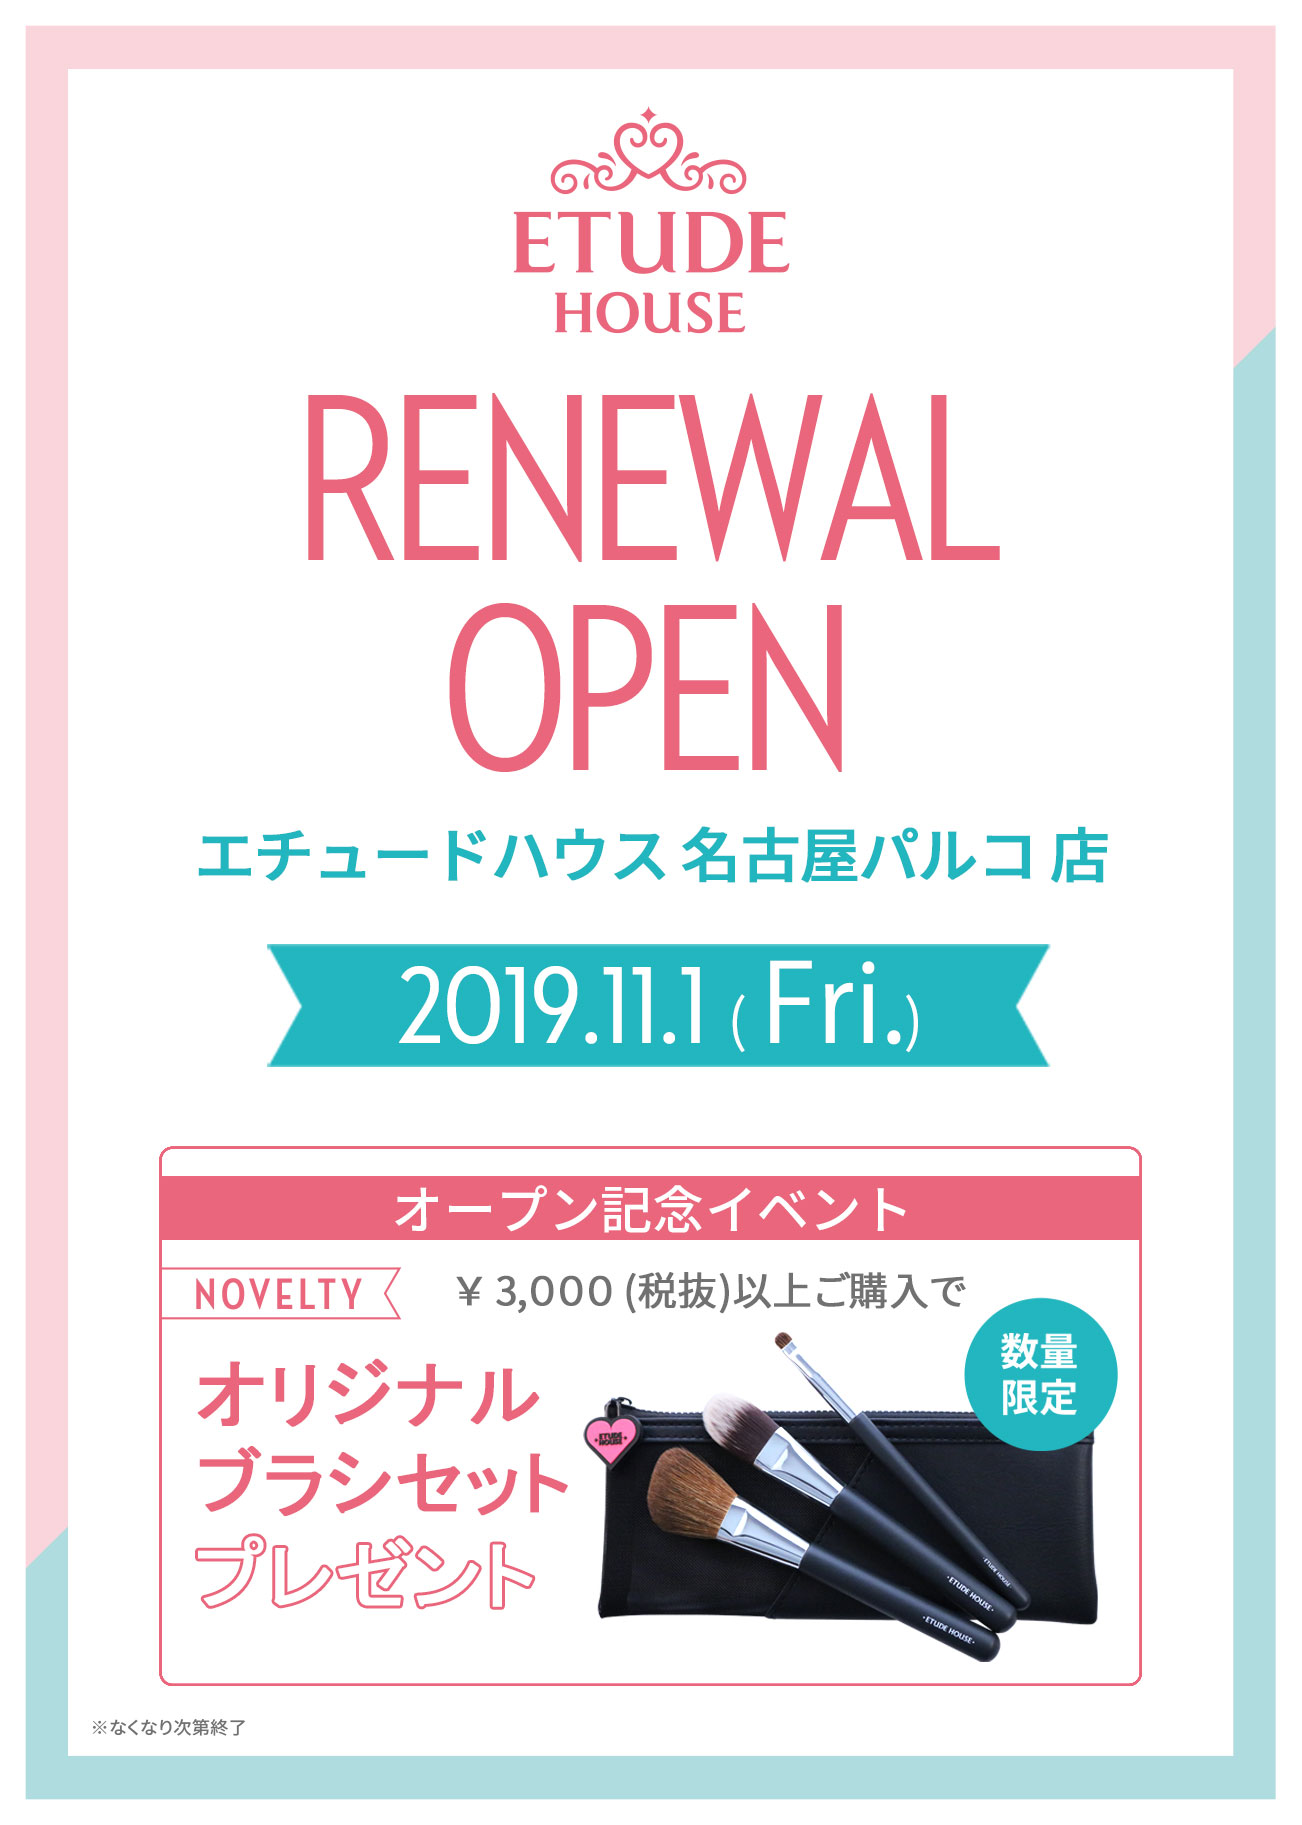 名古屋パルコ店リニューアルオープンのお知らせ 韓国コスメのエチュードハウス公式通販